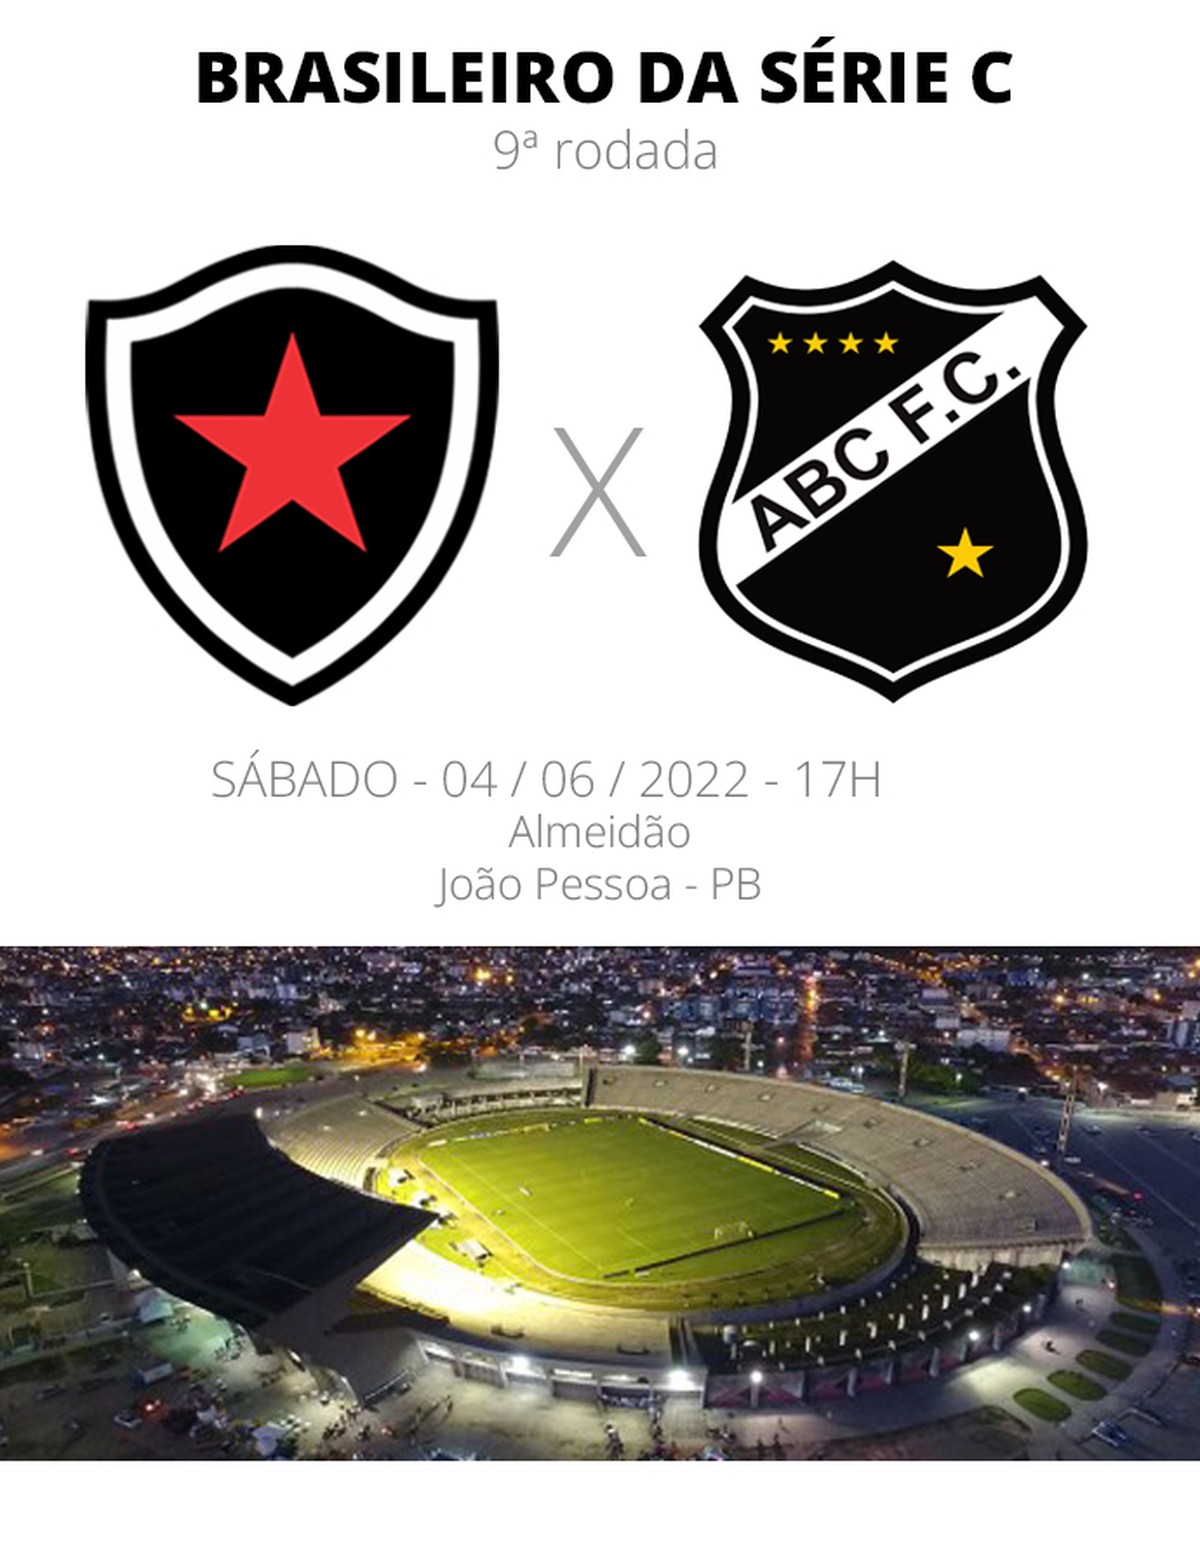 Botafogo da Paraíba - TIRA-DÚVIDAS DO BELO 📢🔥 Você ainda tem dúvidas em  relação à entrada no Almeidão no próximo sábado? Confere aí embaixo as  respostas para as principais questões. 💬 Tomei